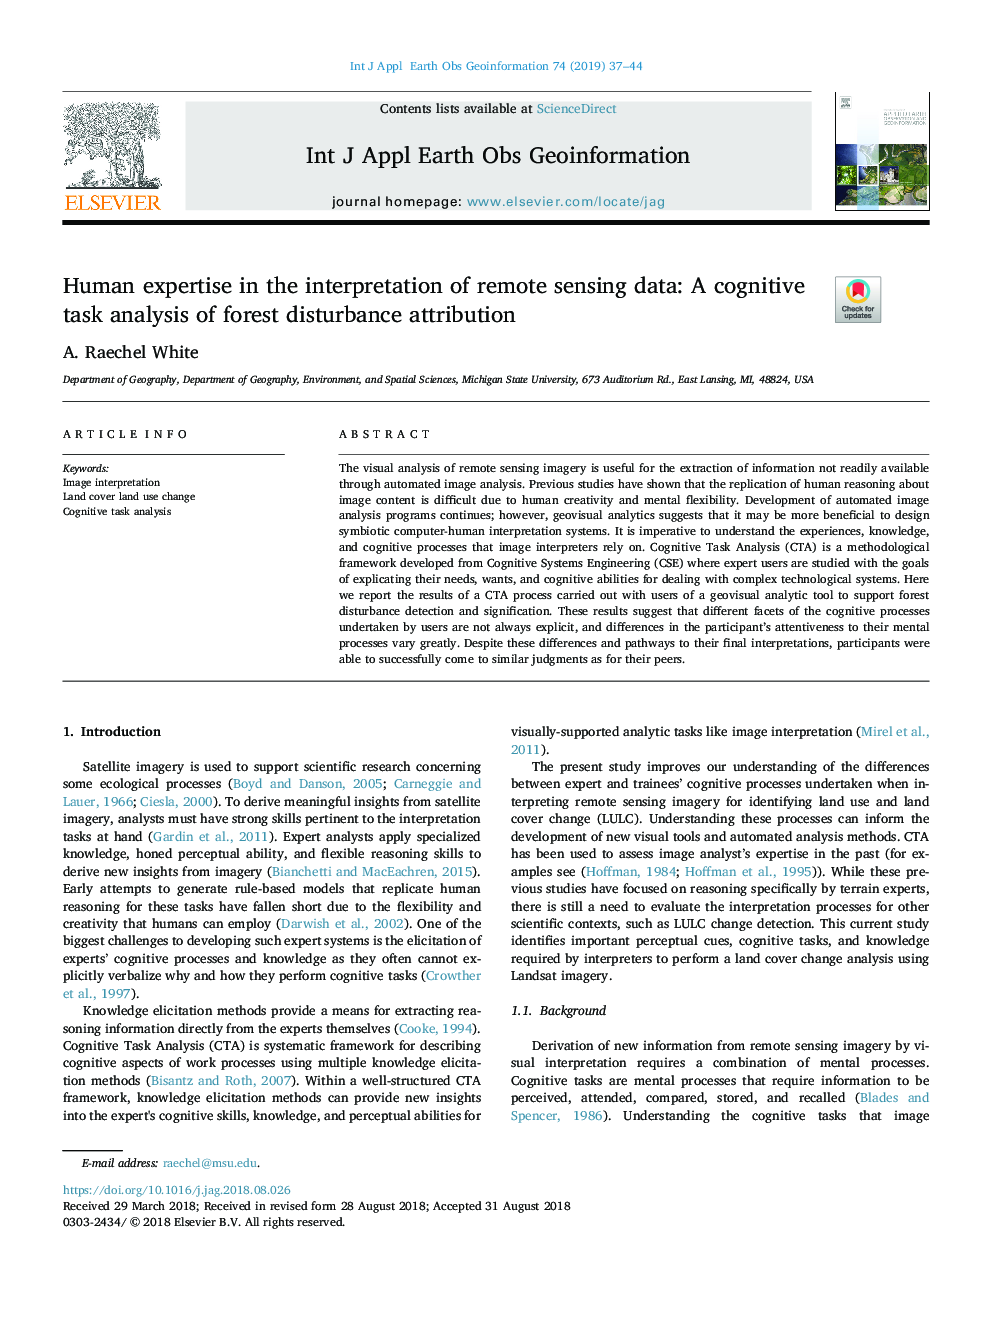 تخصص انسانی در تفسیر داده های سنجش از راه دور: یک تجزیه و تحلیل کار شناختی از تخصیص اختلالات جنگل